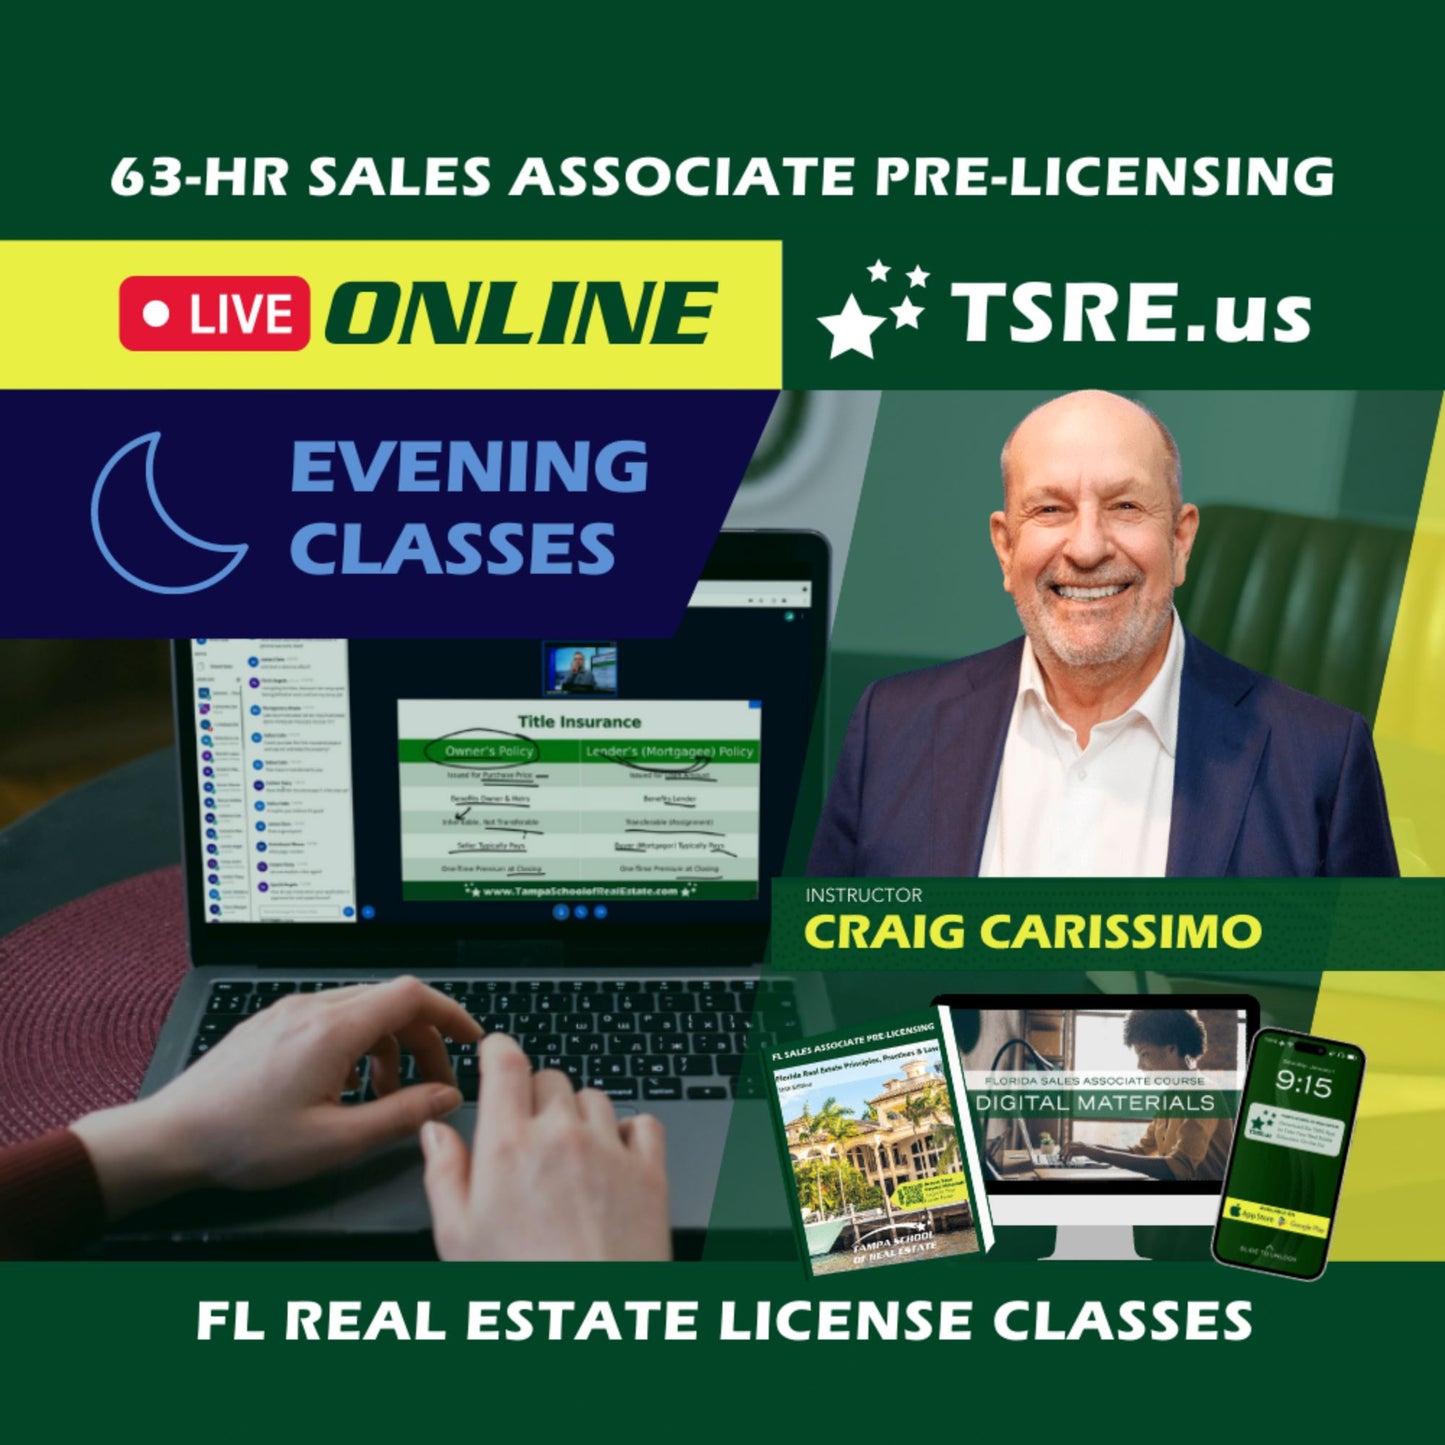 LIVE Online | Jul 8 6:30pm | 63-HR FL Real Estate Classes SLPRE TSRE LIVE Online | Tampa School of Real Estate 